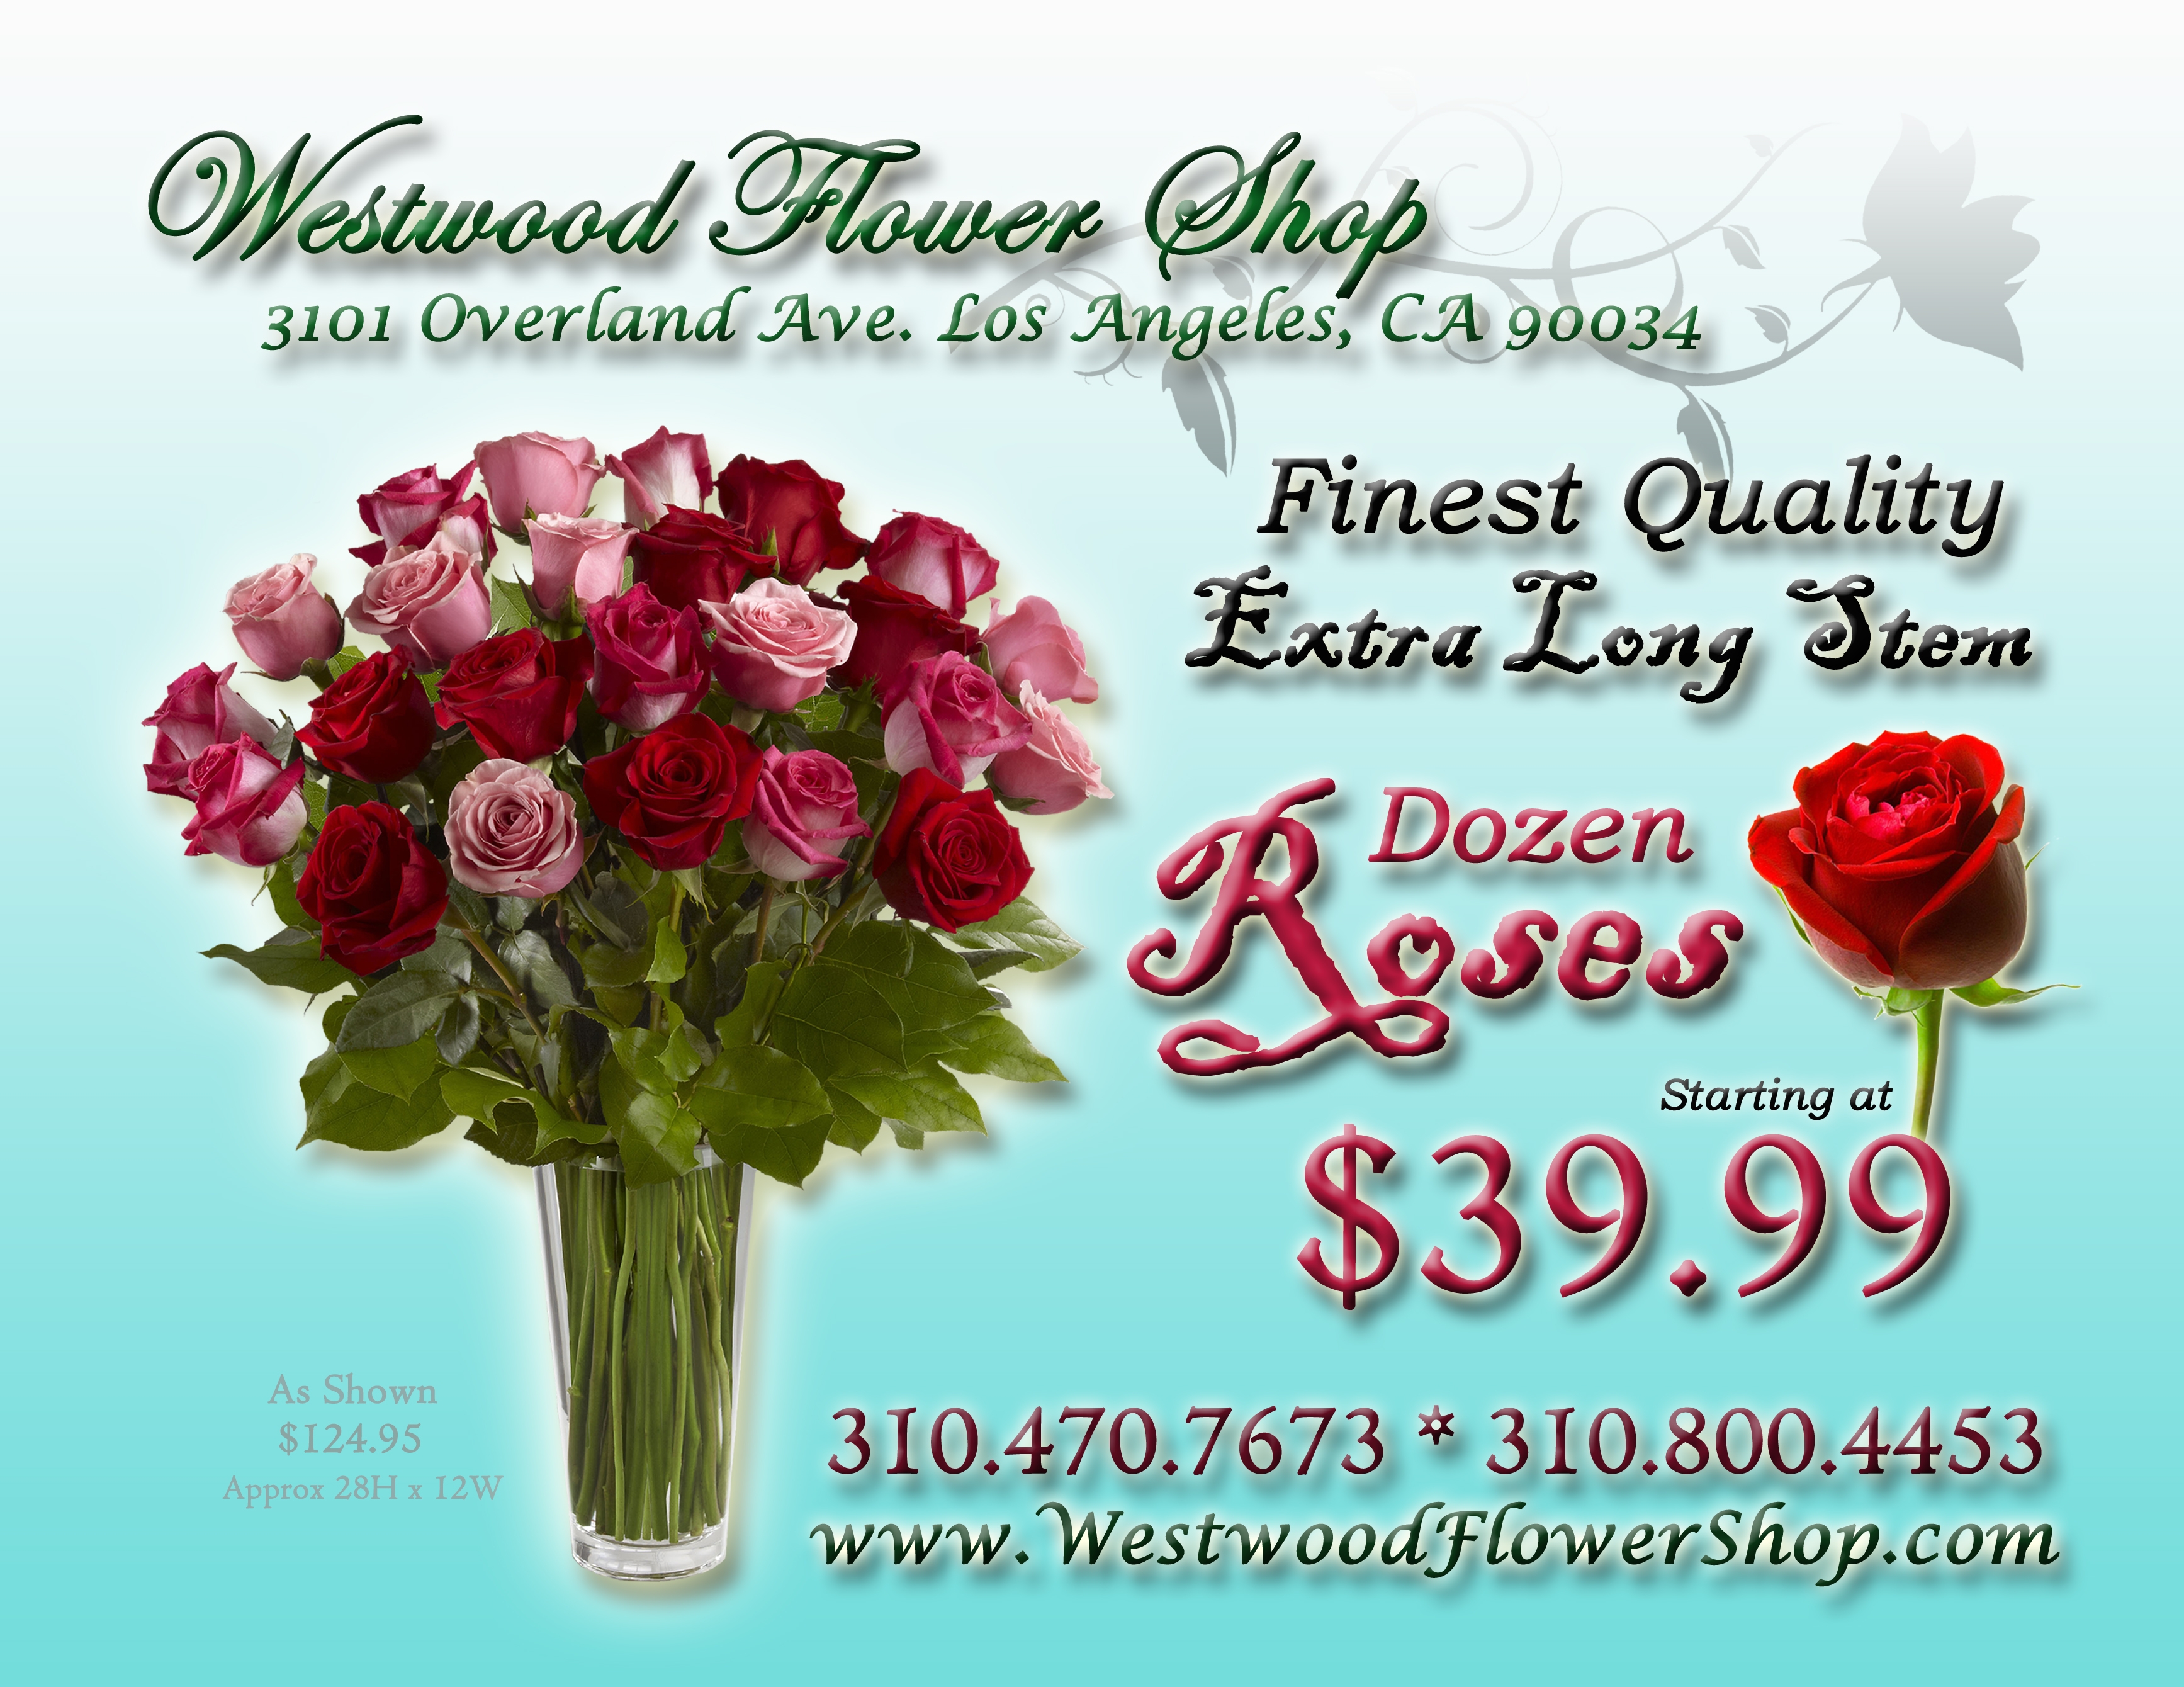 Westwood Flower Shop Promotion Promotion Westwood Flower Shop